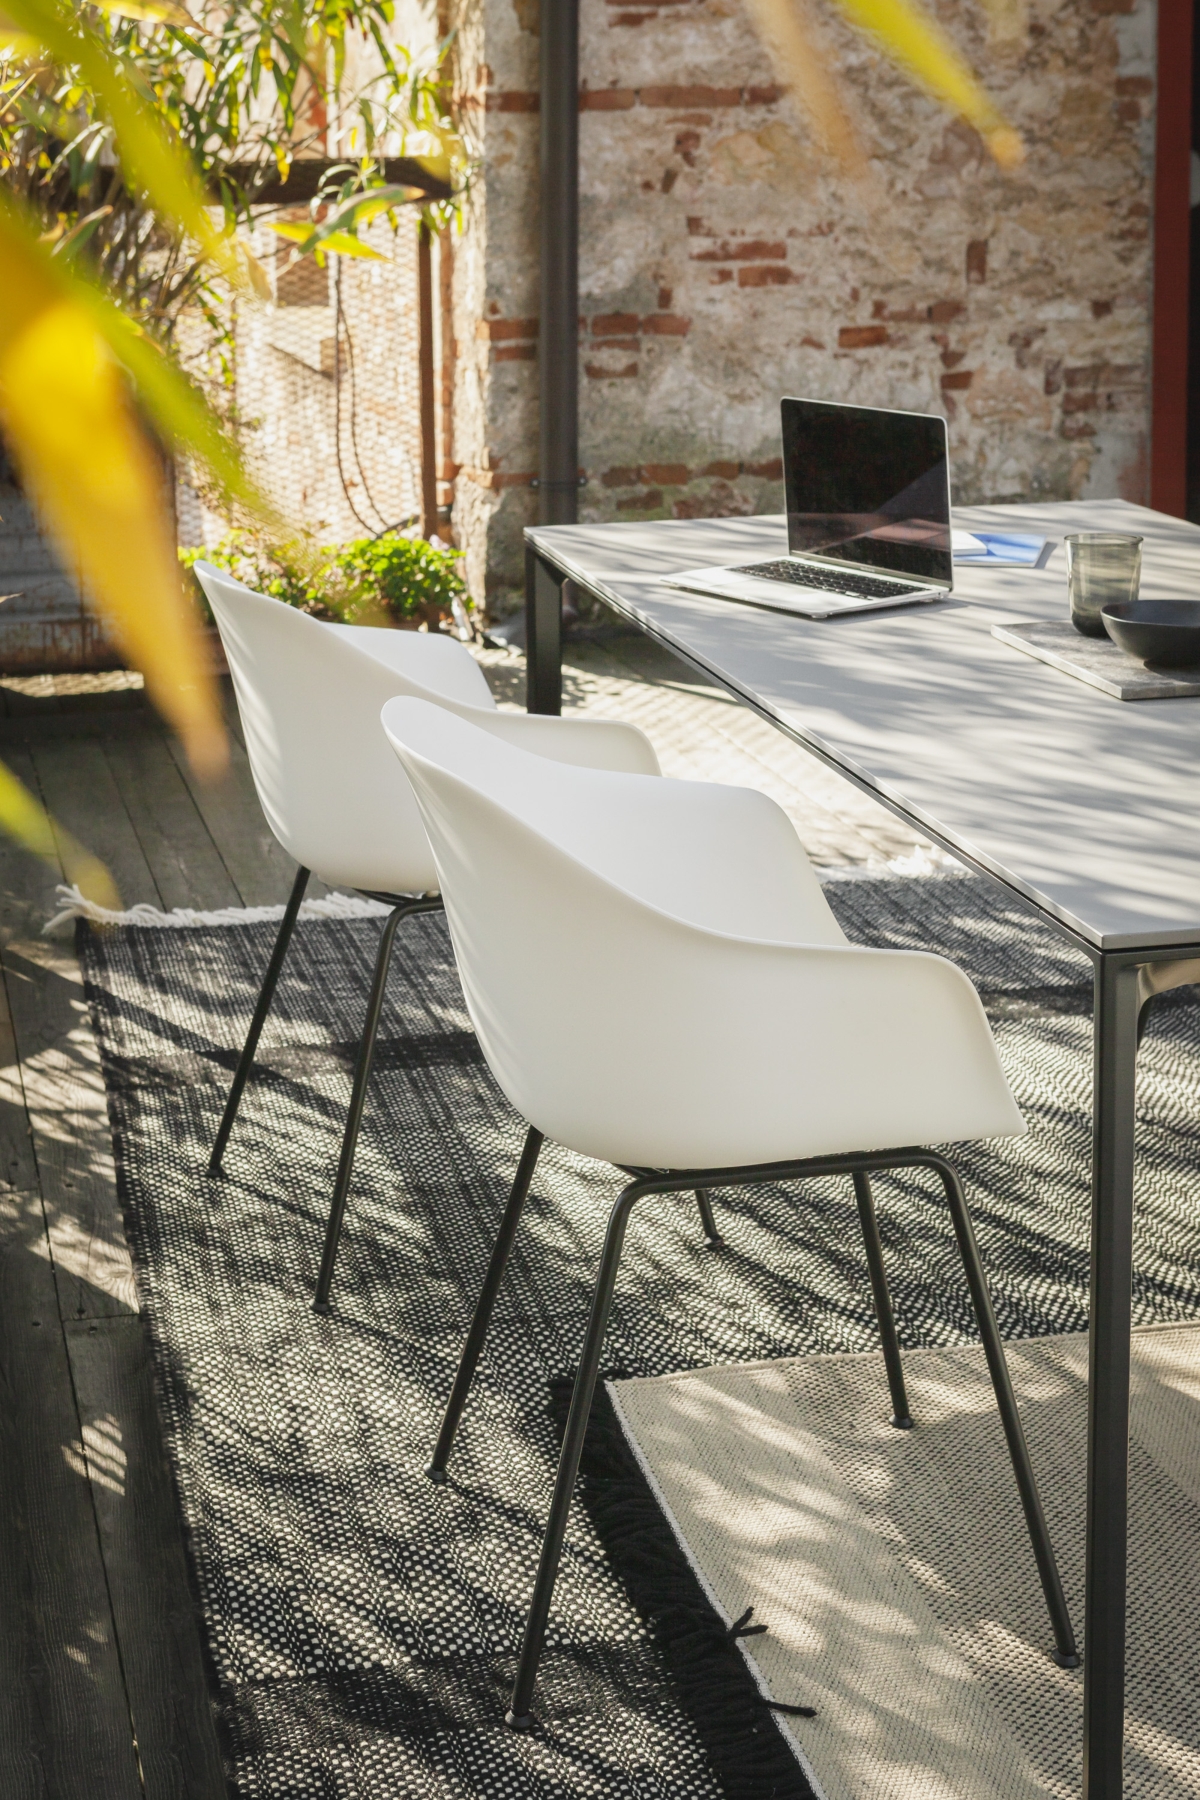 SEELA a pozzetto: la nuova variante outdoor della poltroncina di Lapalma che unisce comfort e personalizzazione